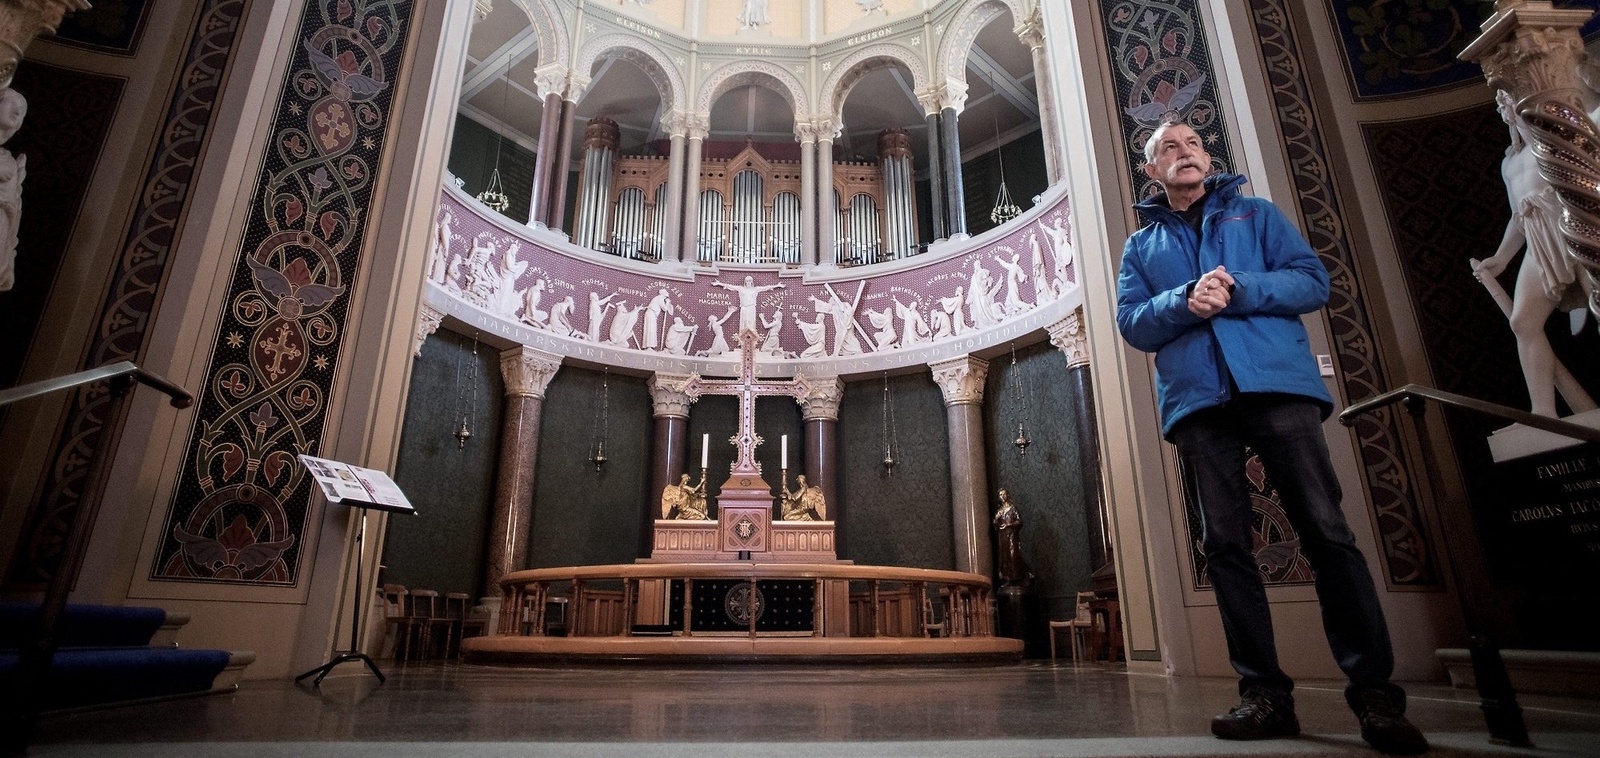 Kyrkoherden Frank Björn Christensen berättar om sin vackra kyrka.
Foto: Jörgen Johansson